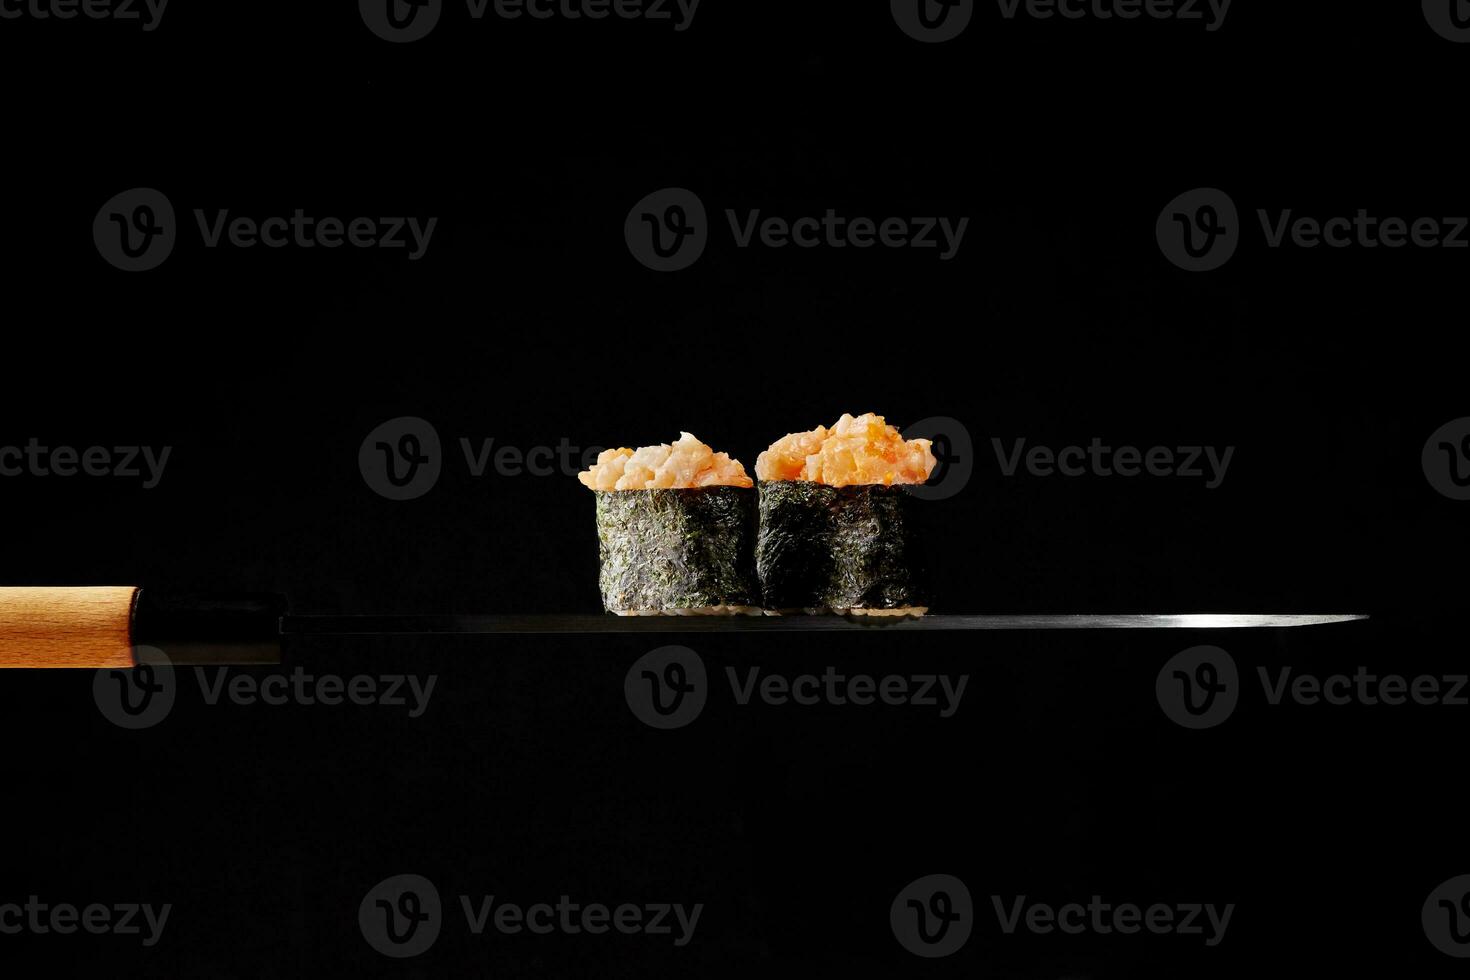 gunkan maki com cobertura do cru salmão e vermelho tobiko em fino lâmina do japonês faca foto